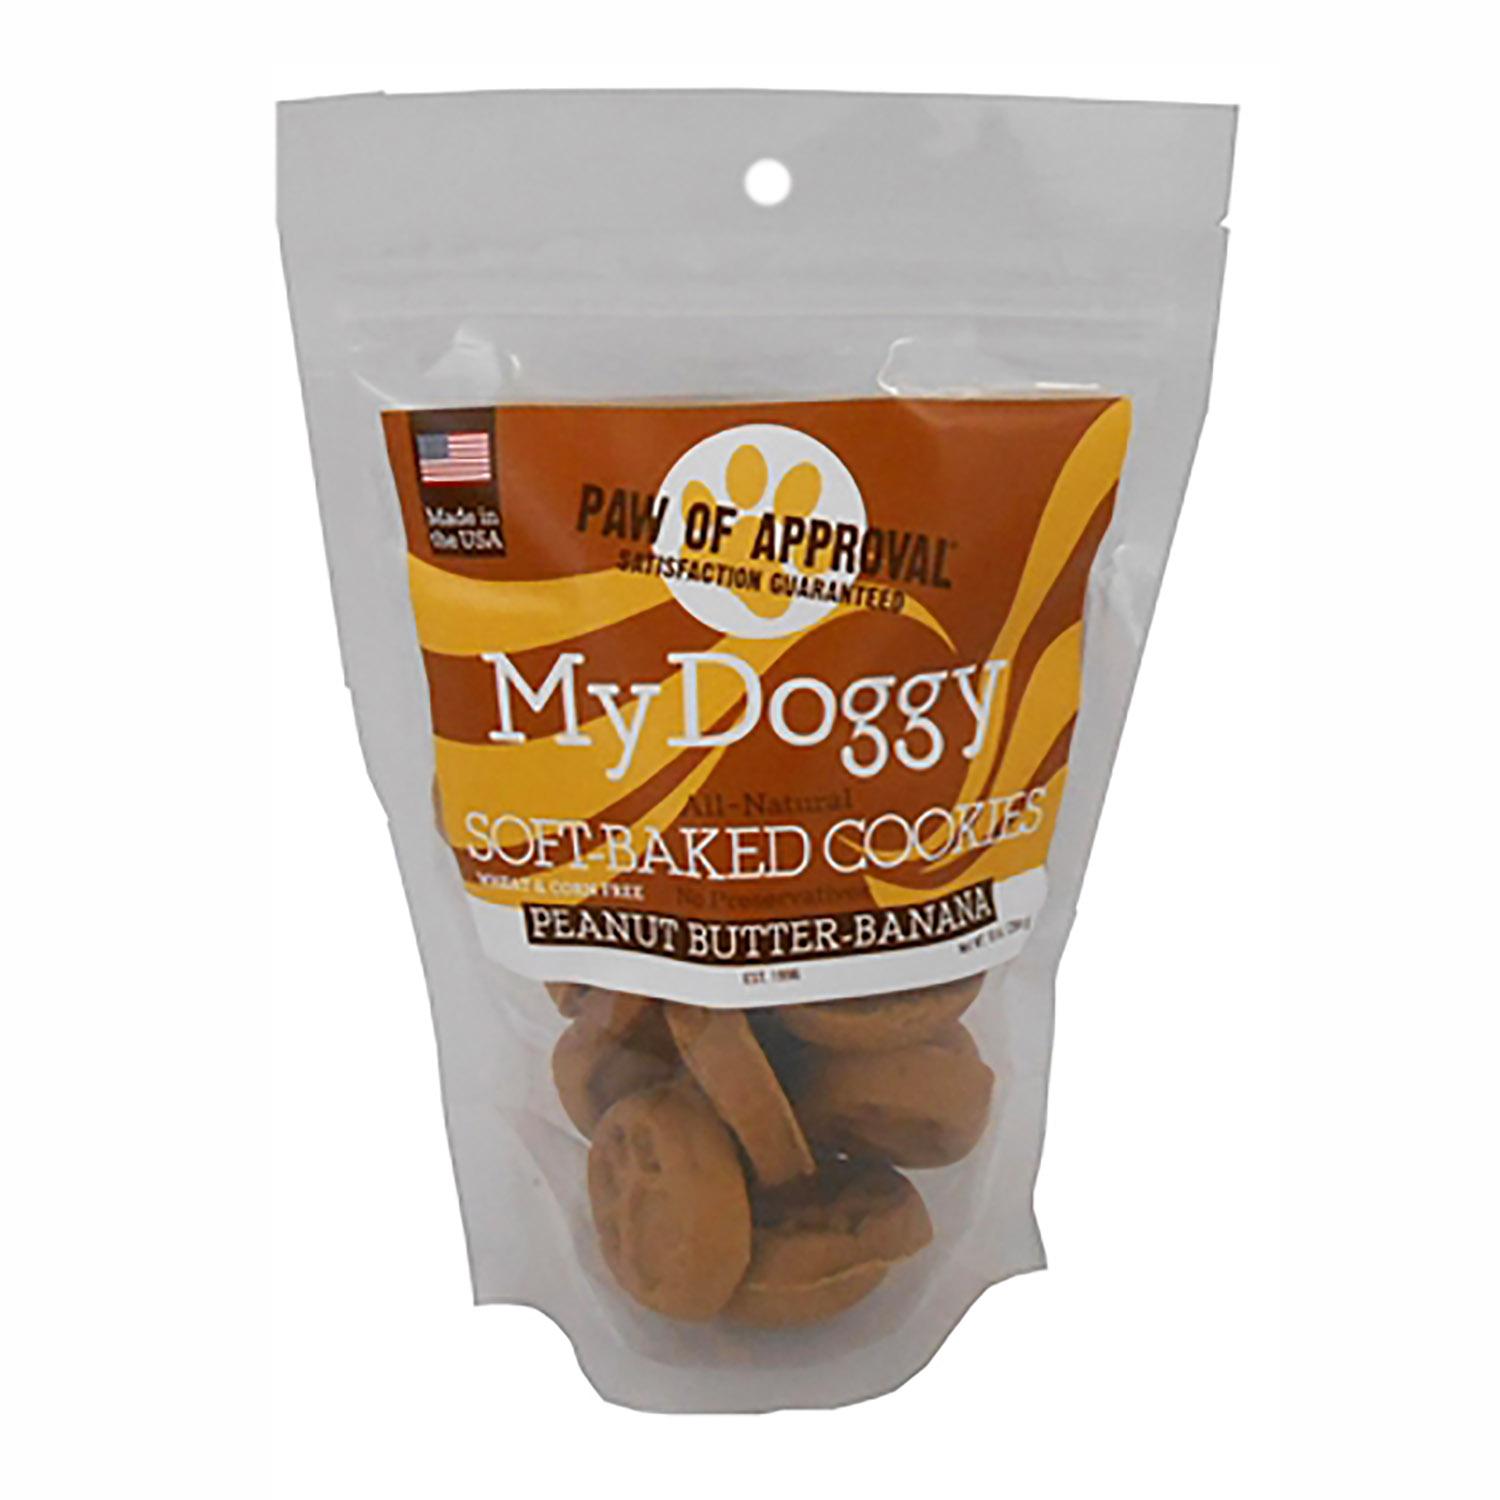 My Doggy Dog Treats - Peanut Butter and Banana